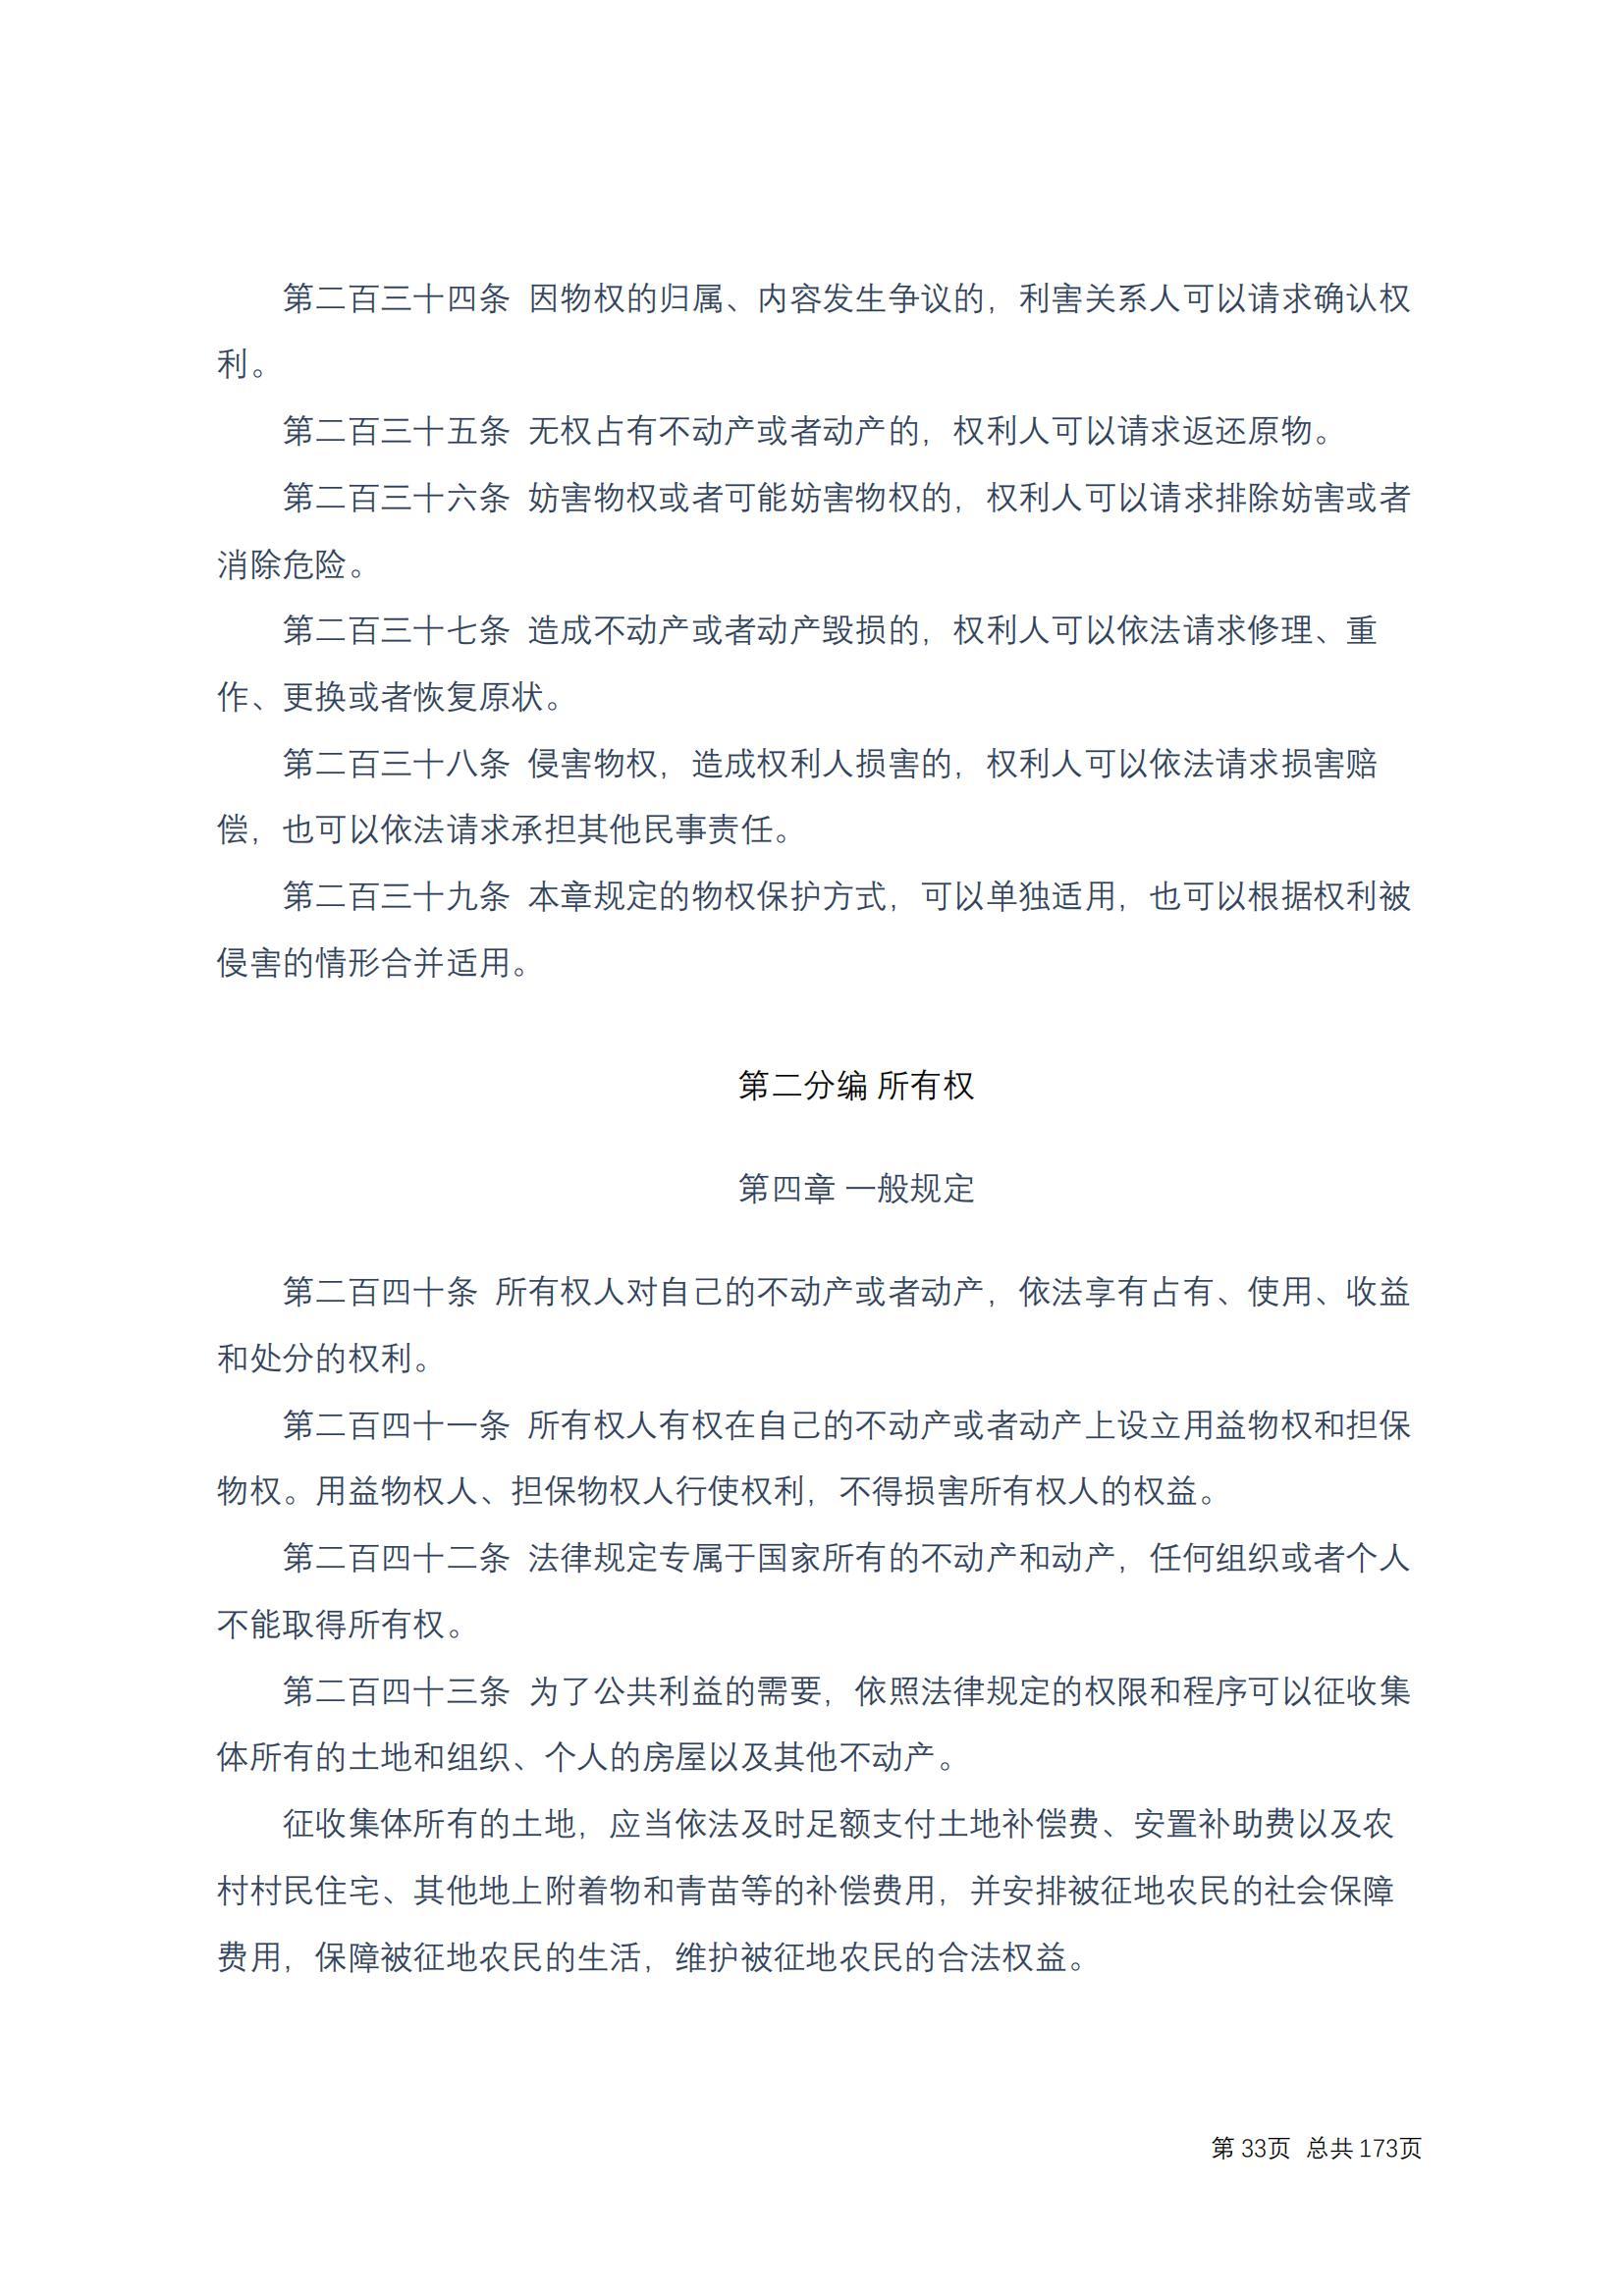 中华人民共和国民法典 修改过_32